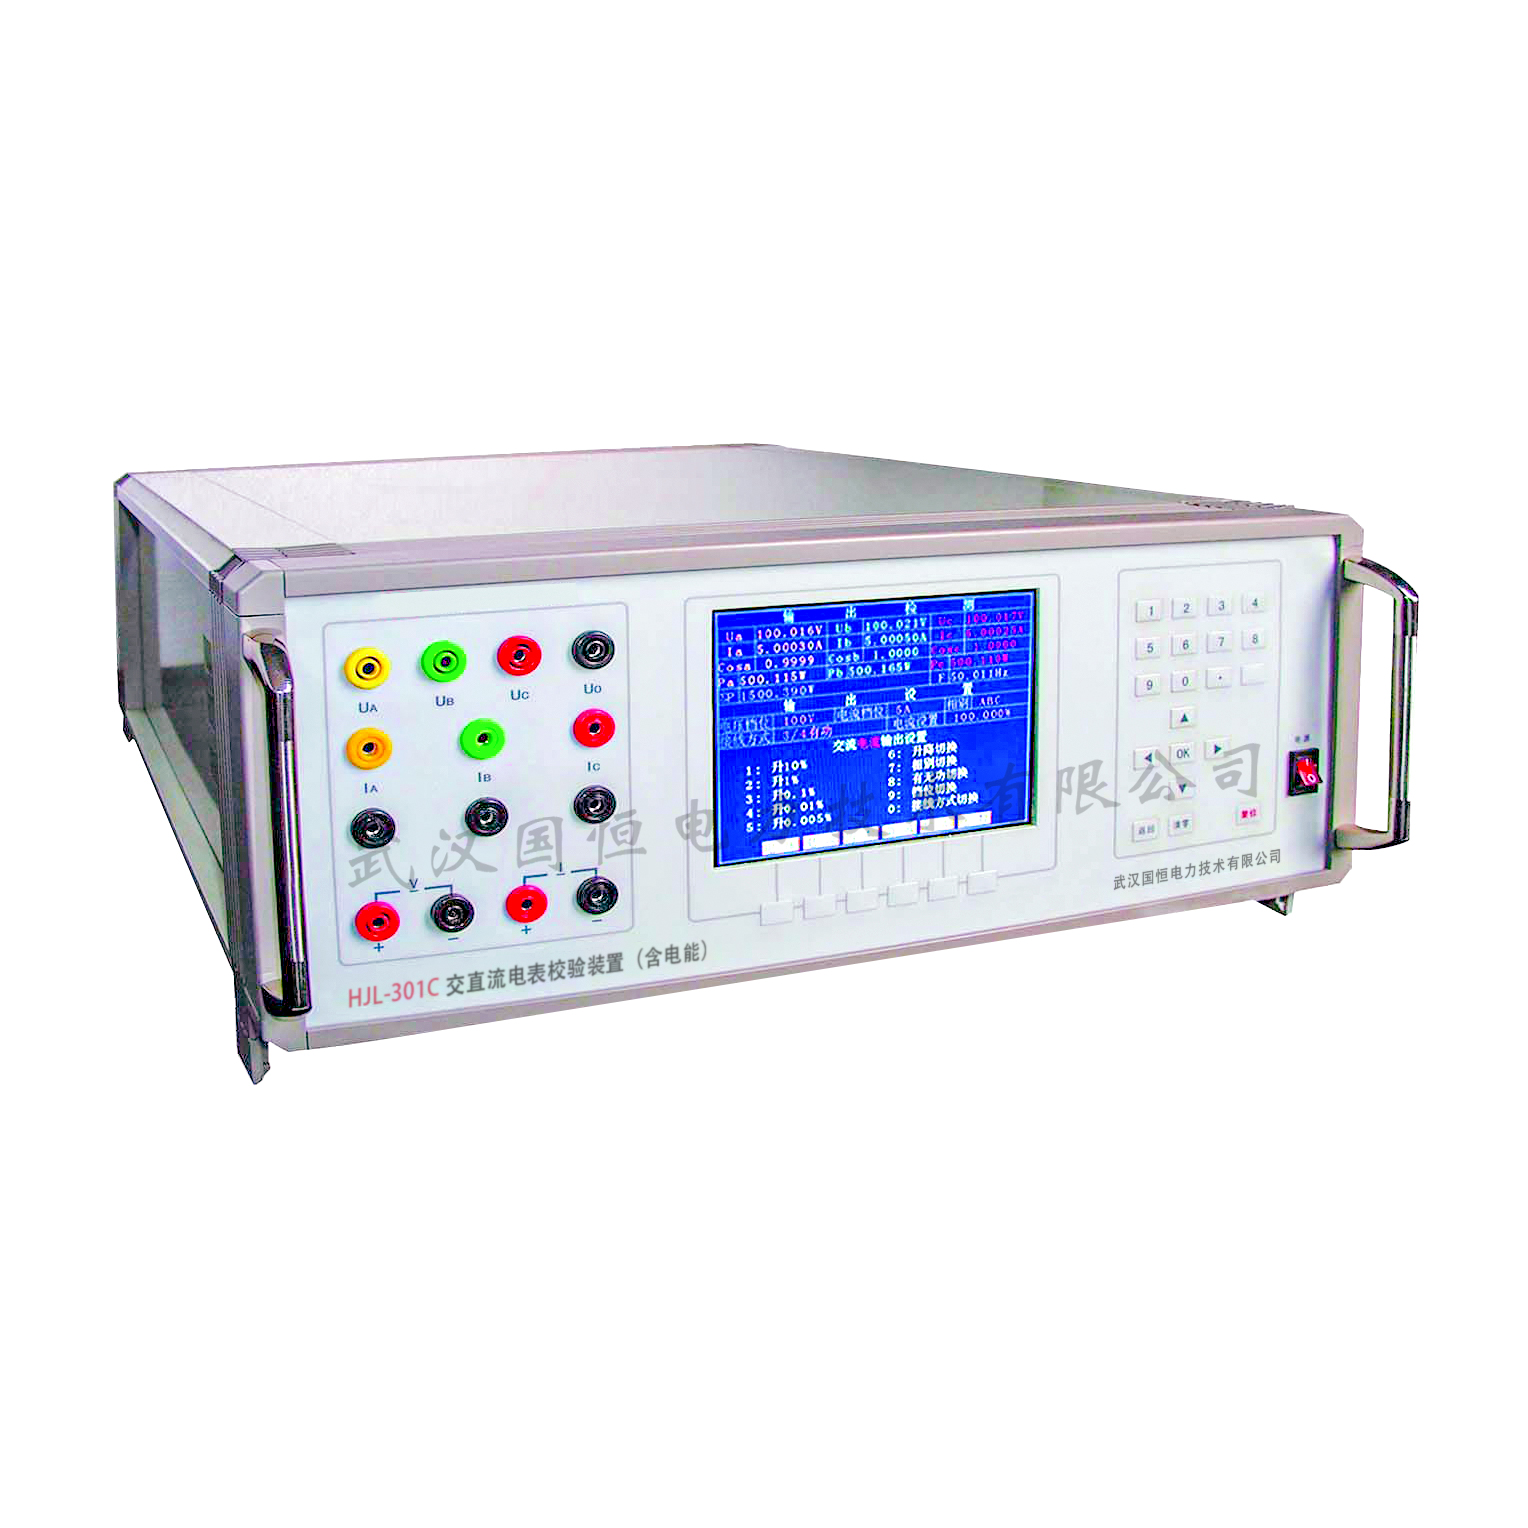 3.HJL-301C交直流电表校验装置-含电能